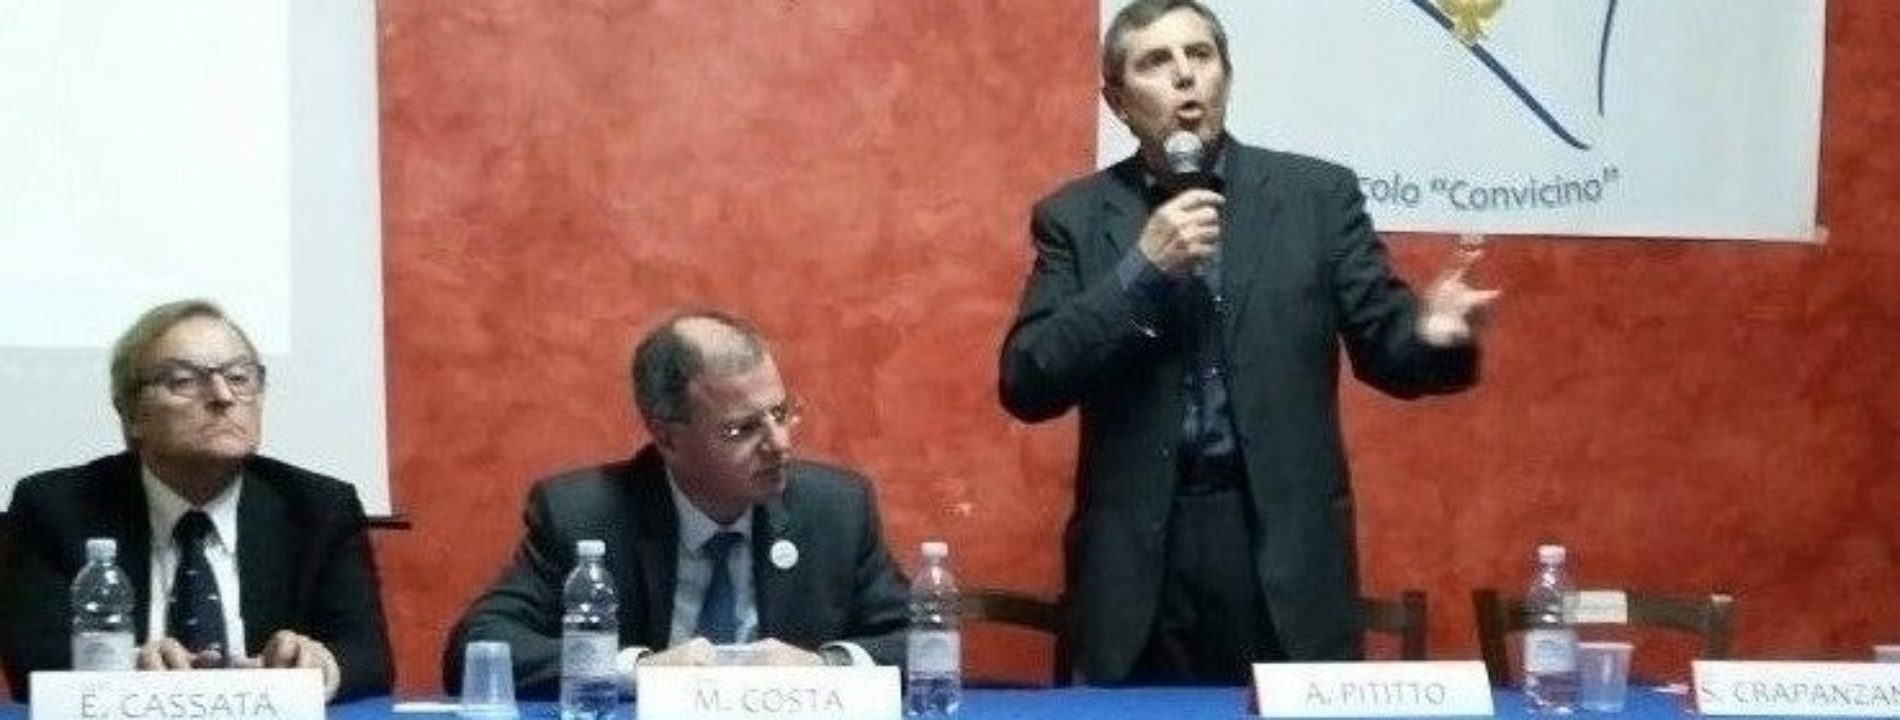 Il prof. Massimo Costa inaugura un nuovo progetto politico a Barrafranca